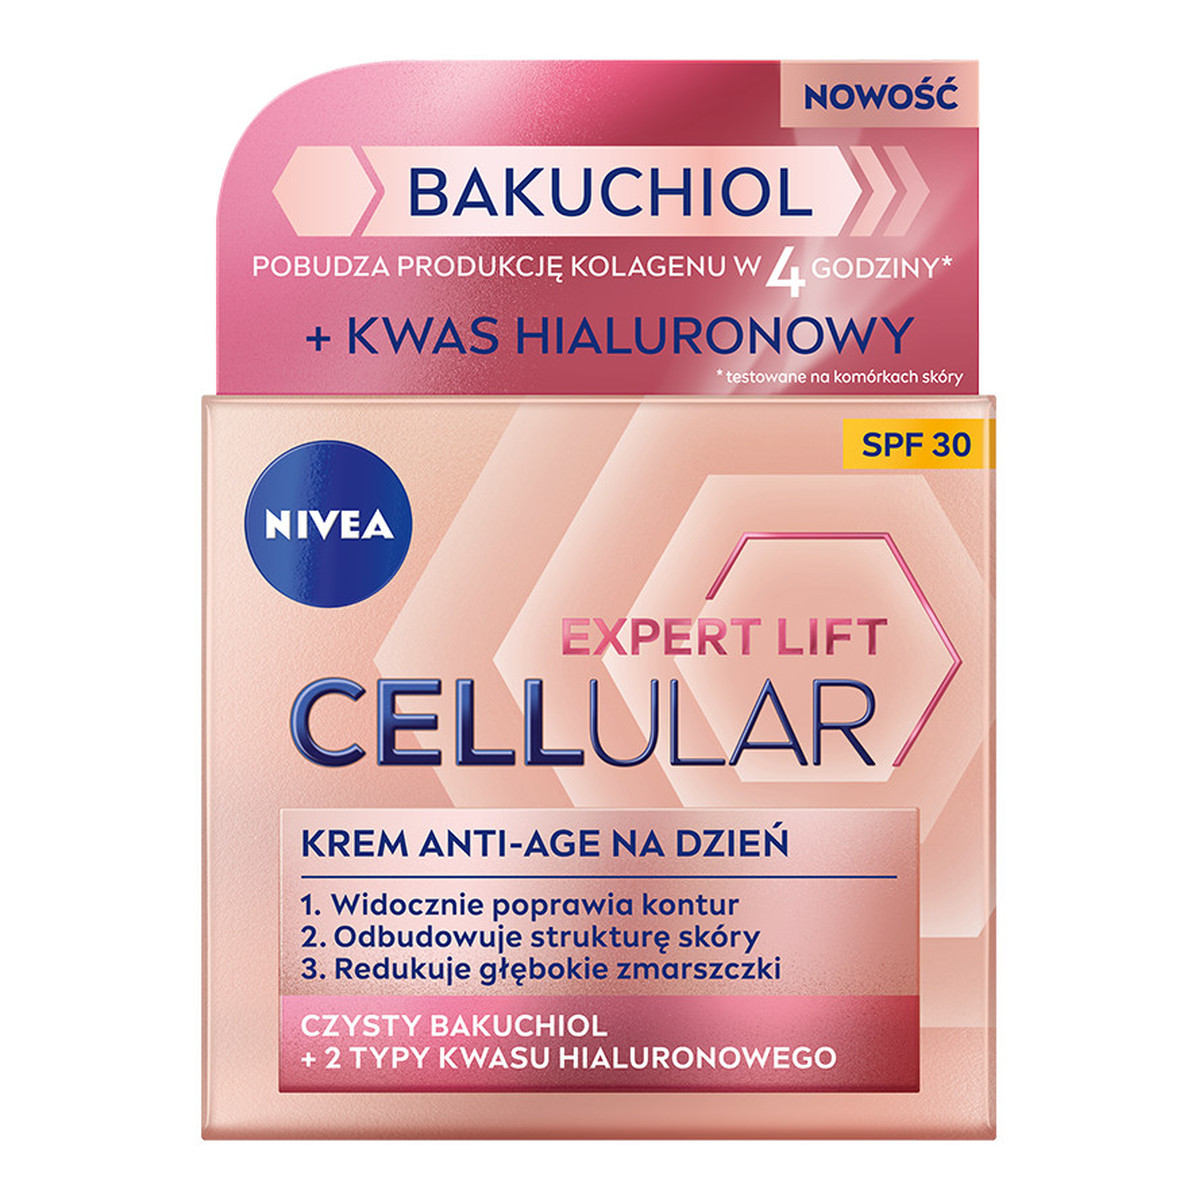 Nivea Cellular Expert Lift Bakuchiol krem przeciwstarzeniowy na noc 50ml